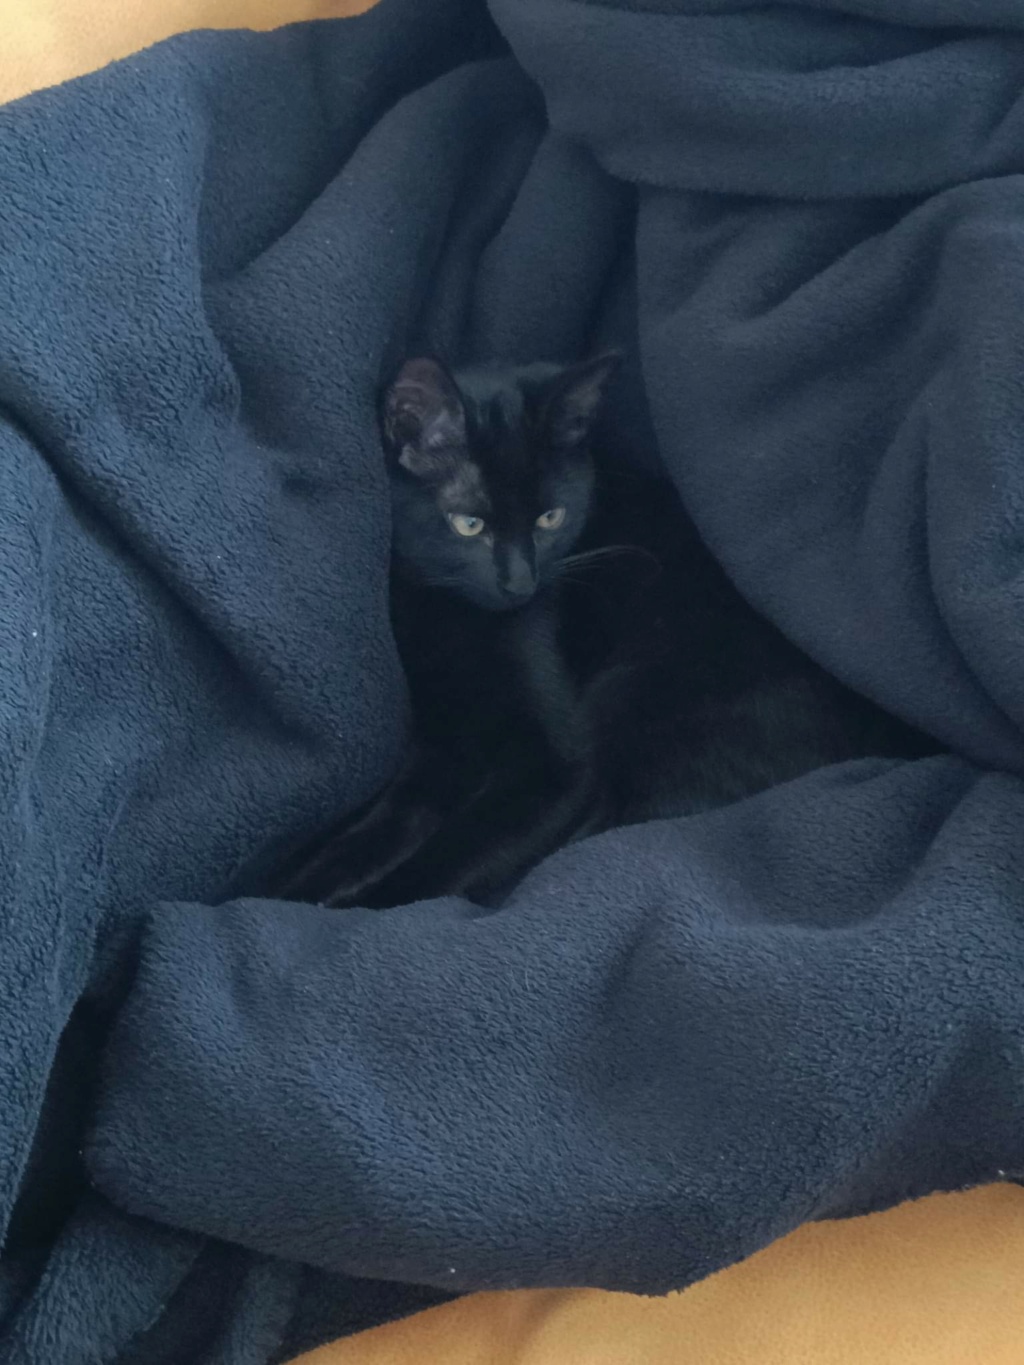 TYBOUN, chaton noir mâle né le 15/04/2022 Receiv20